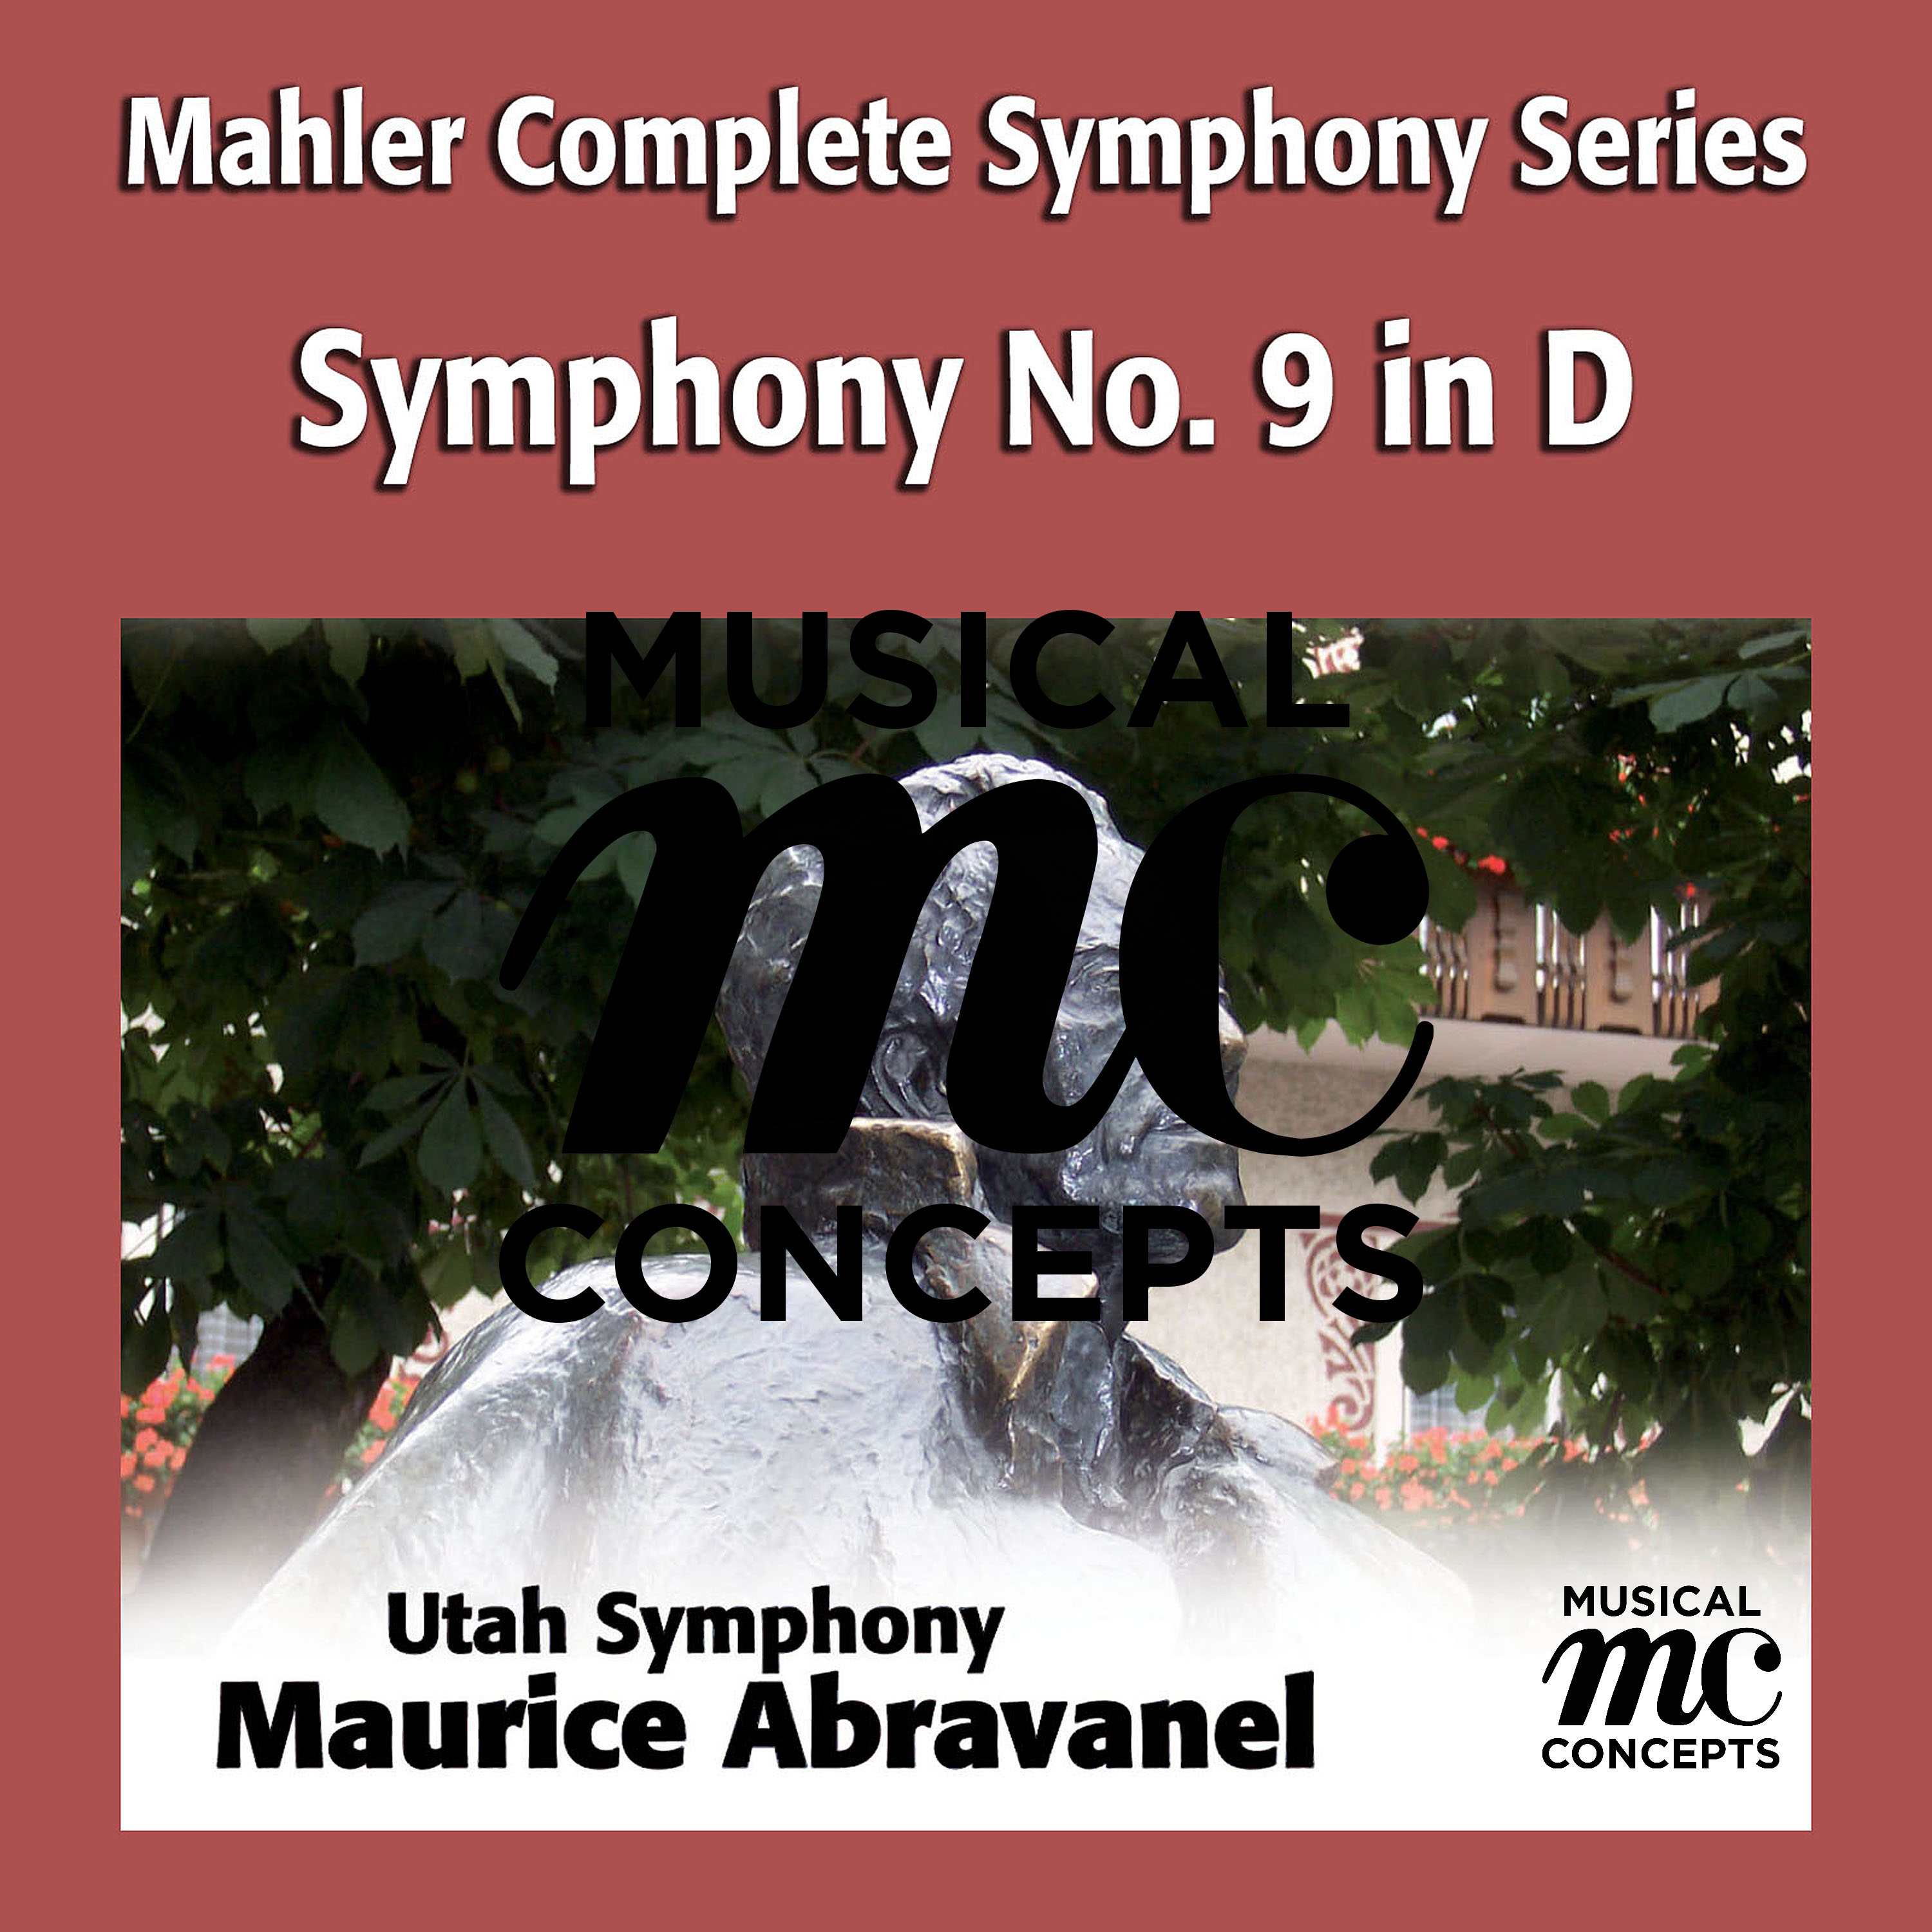 Symphony No. 9 in D Major: IV. Adagio - Sehr langsam und noch zuruckhaltend: bar 64